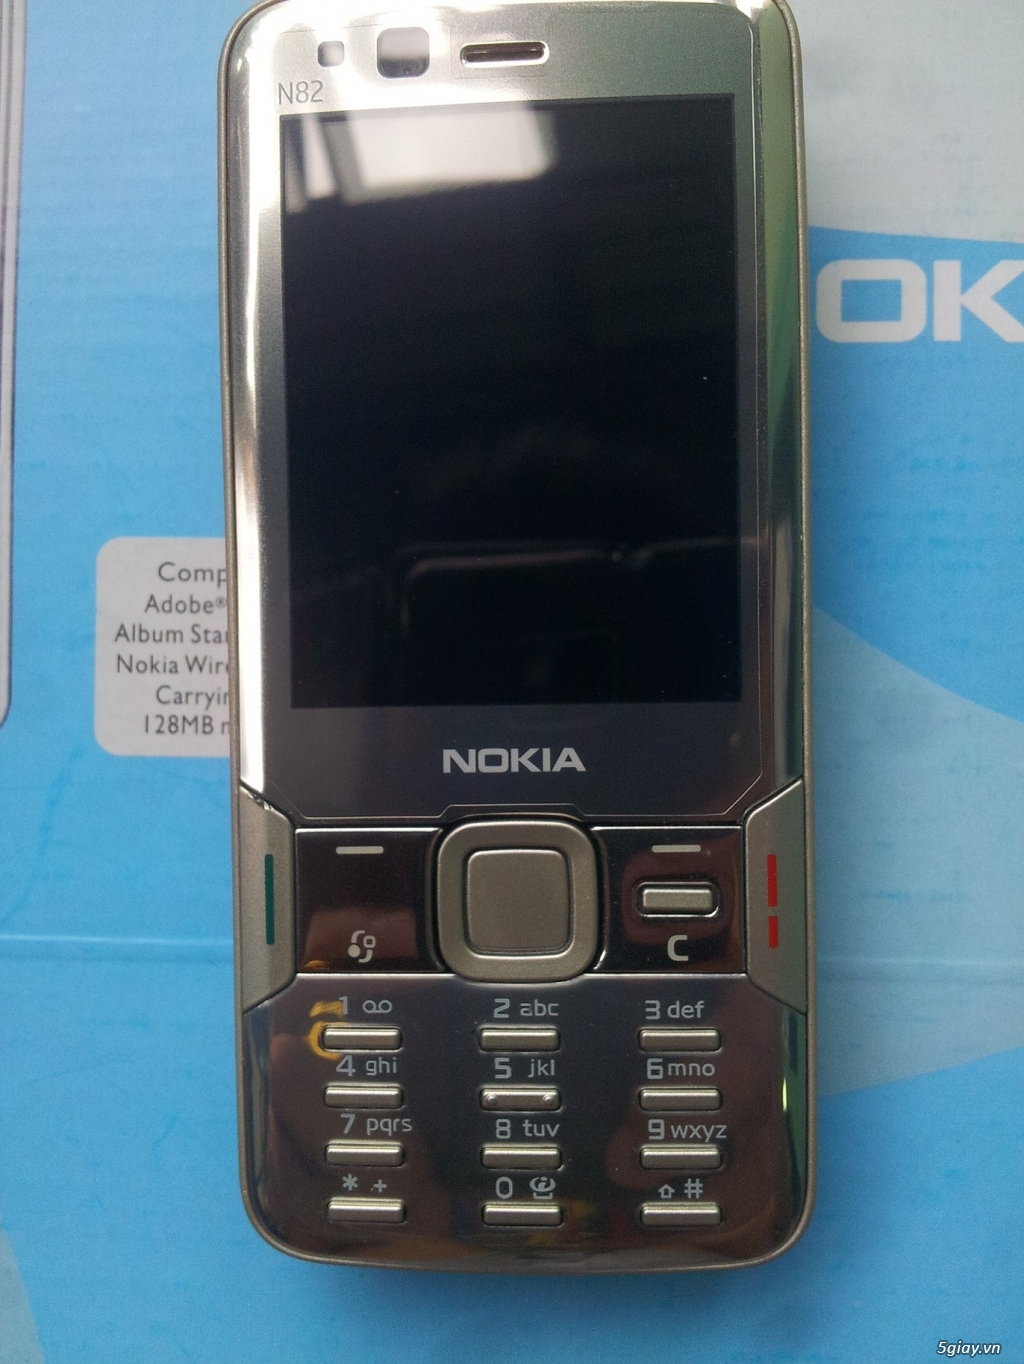 Điện Thoại Nokia Cổ chữa cháy giá rẻ - 18